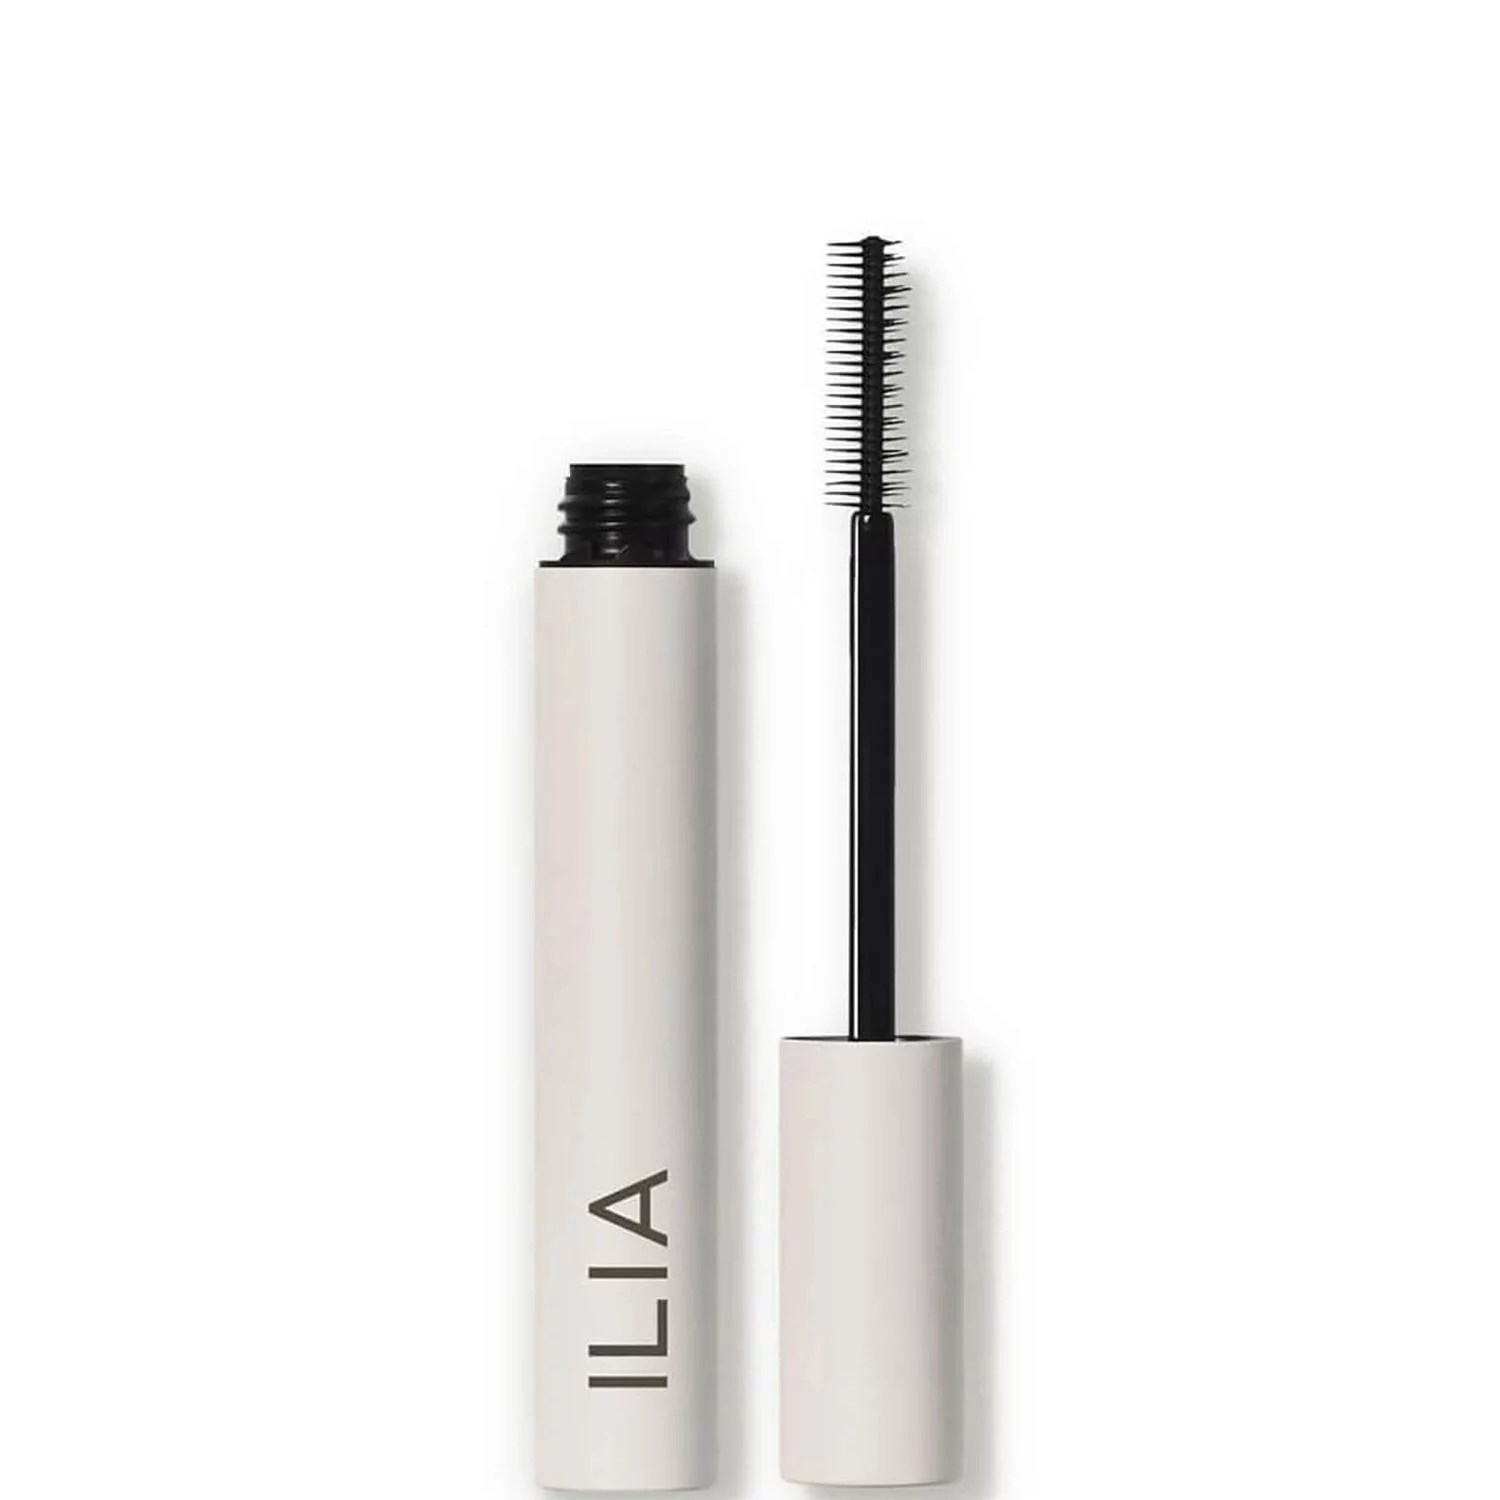 ilia limitless lash mascara on a white background